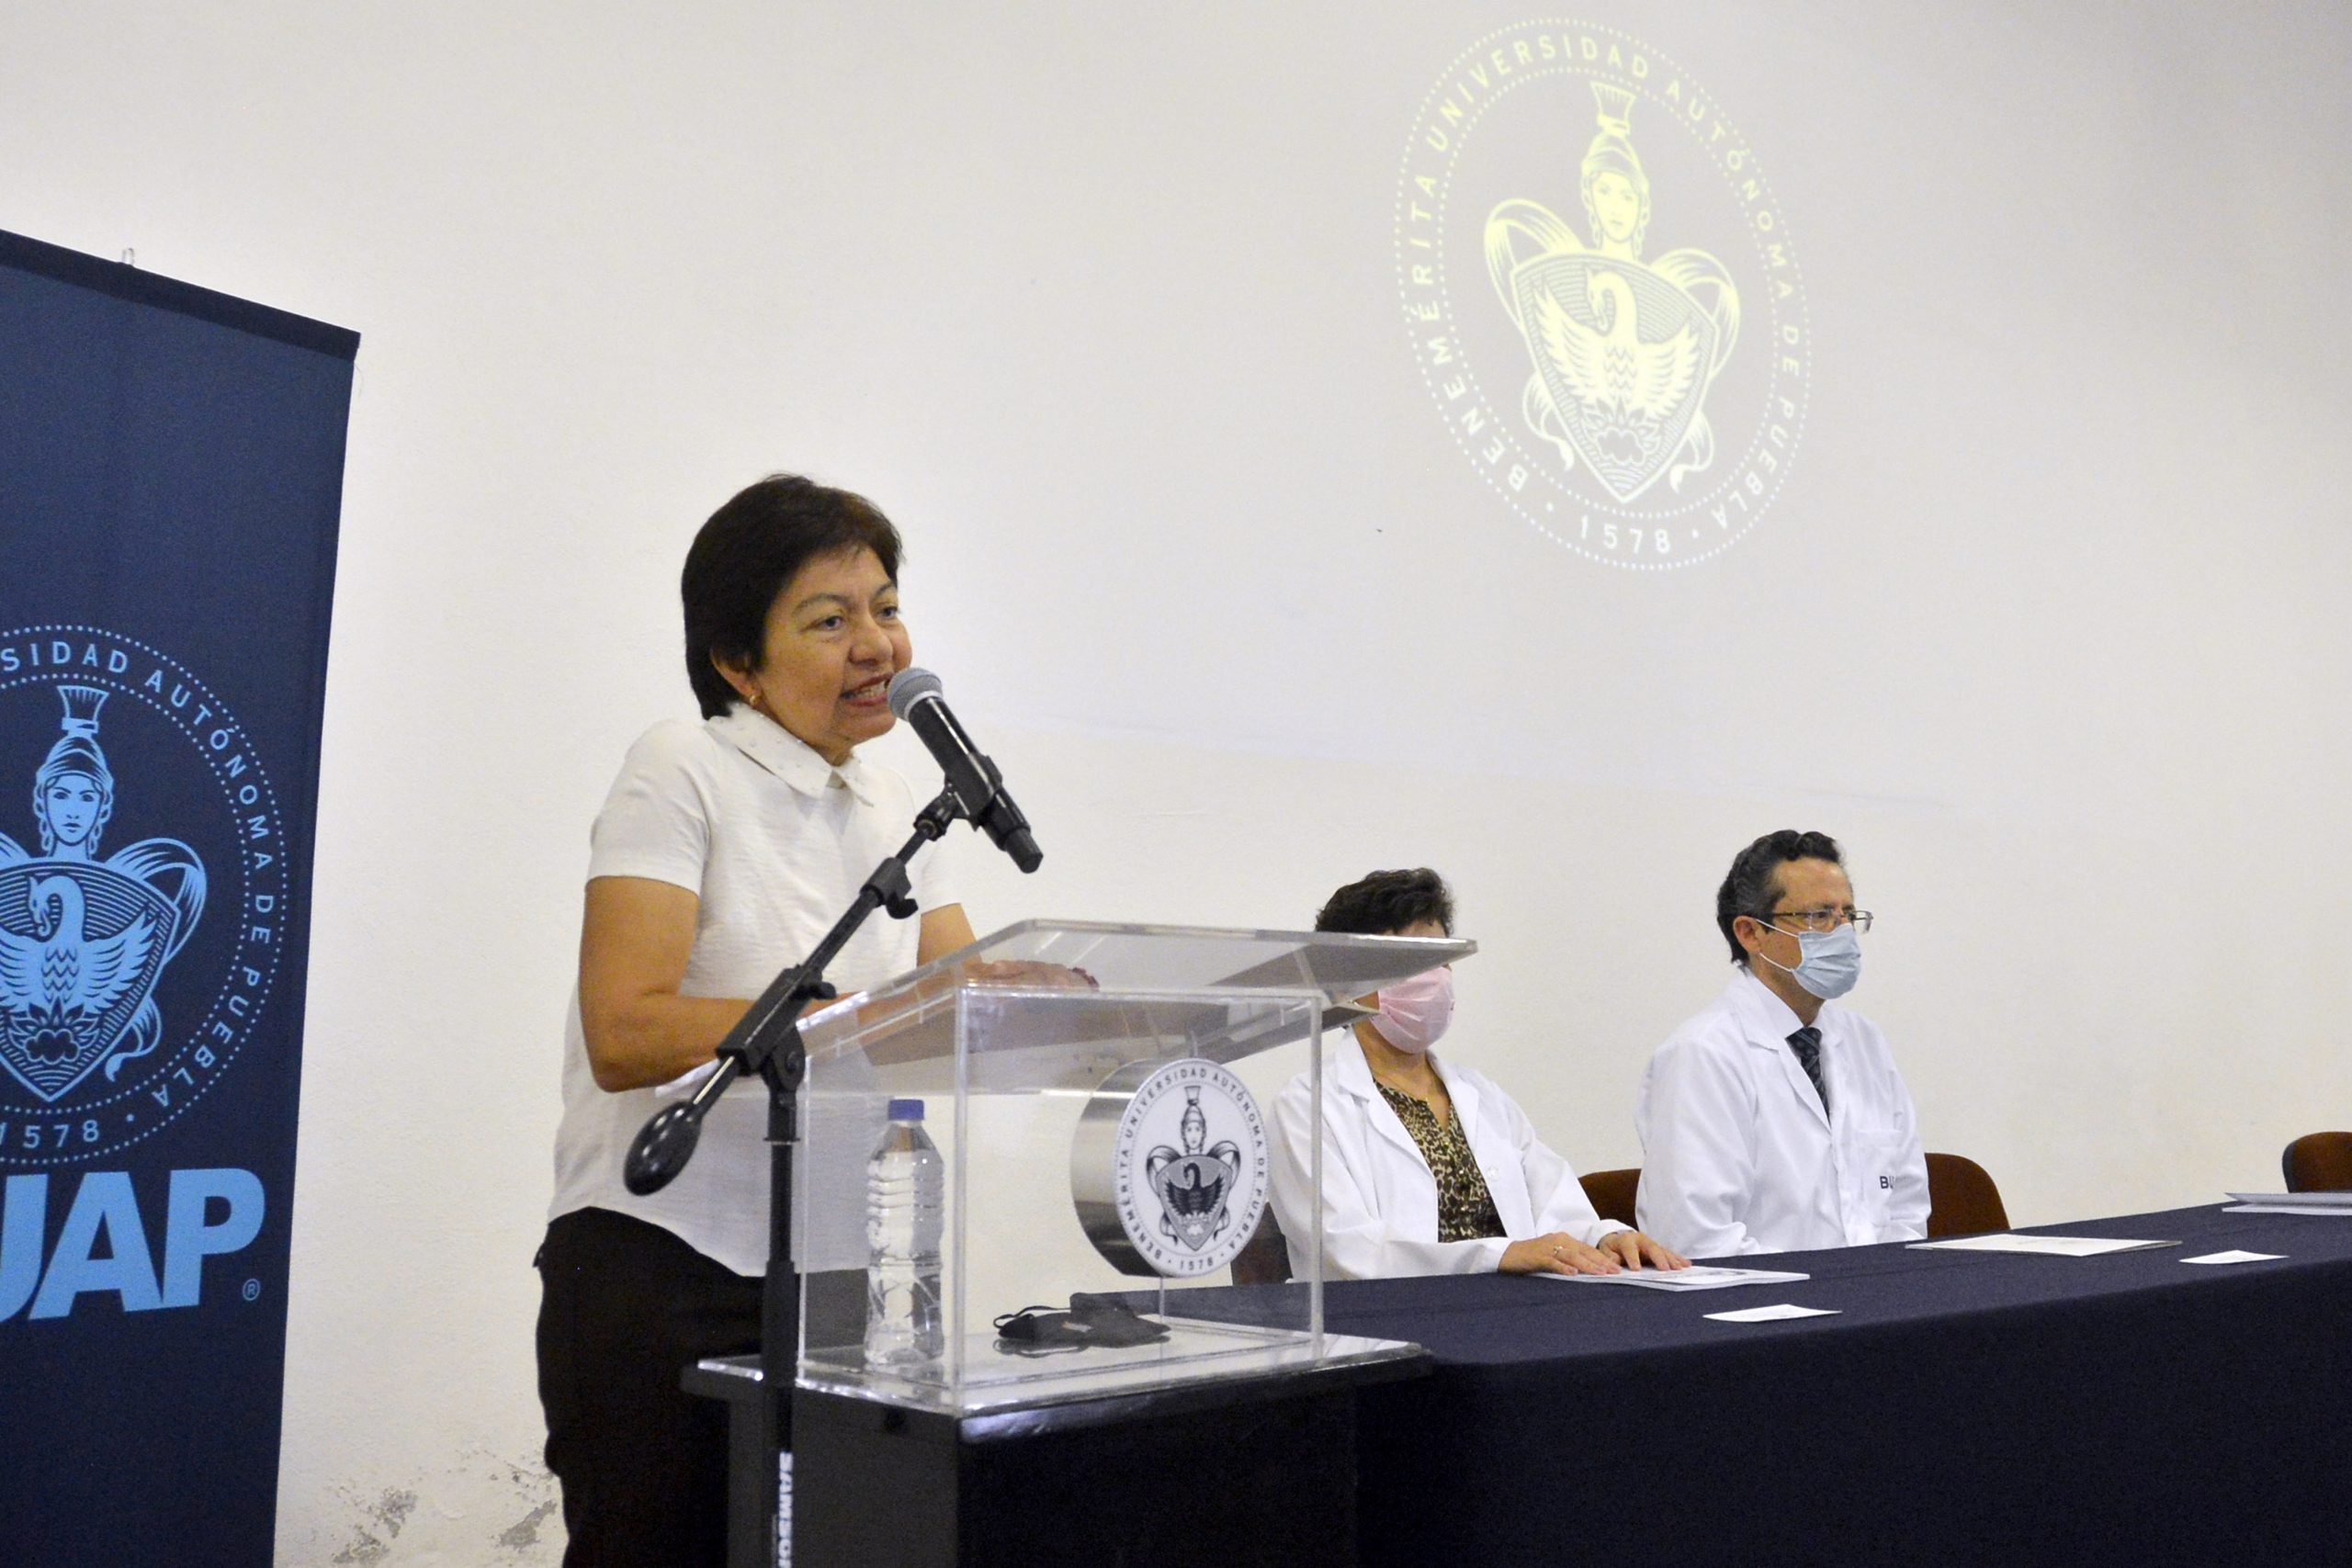 Facultad de Medicina BUAP forma profesionales de la salud con sentido humano y compromiso social: Rectora María Lilia Cedillo